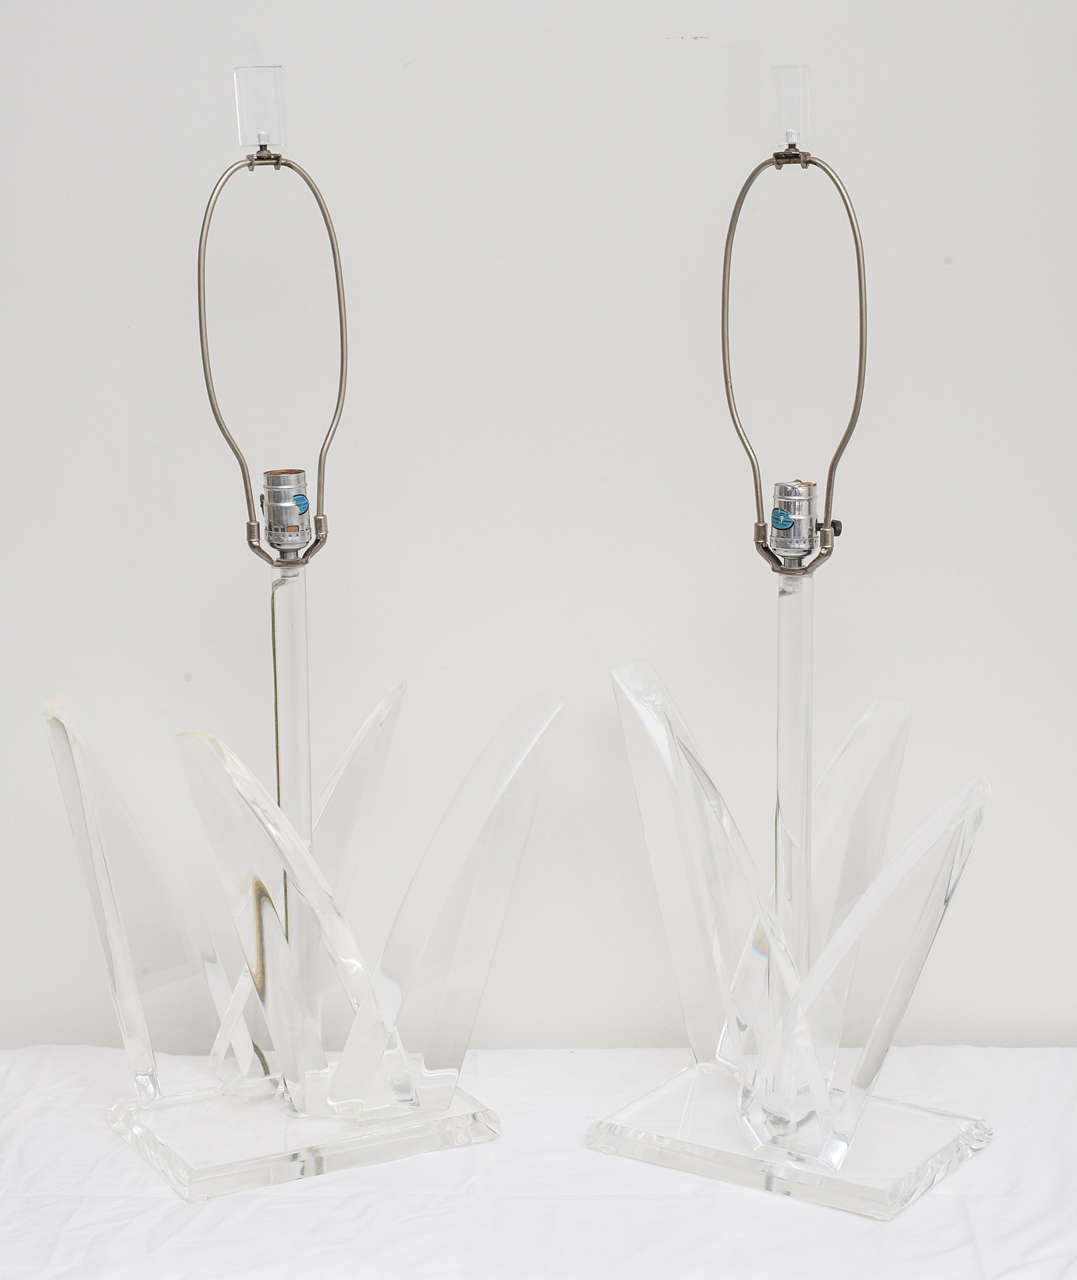 American Pair of Lucite Lamps by Van Teal